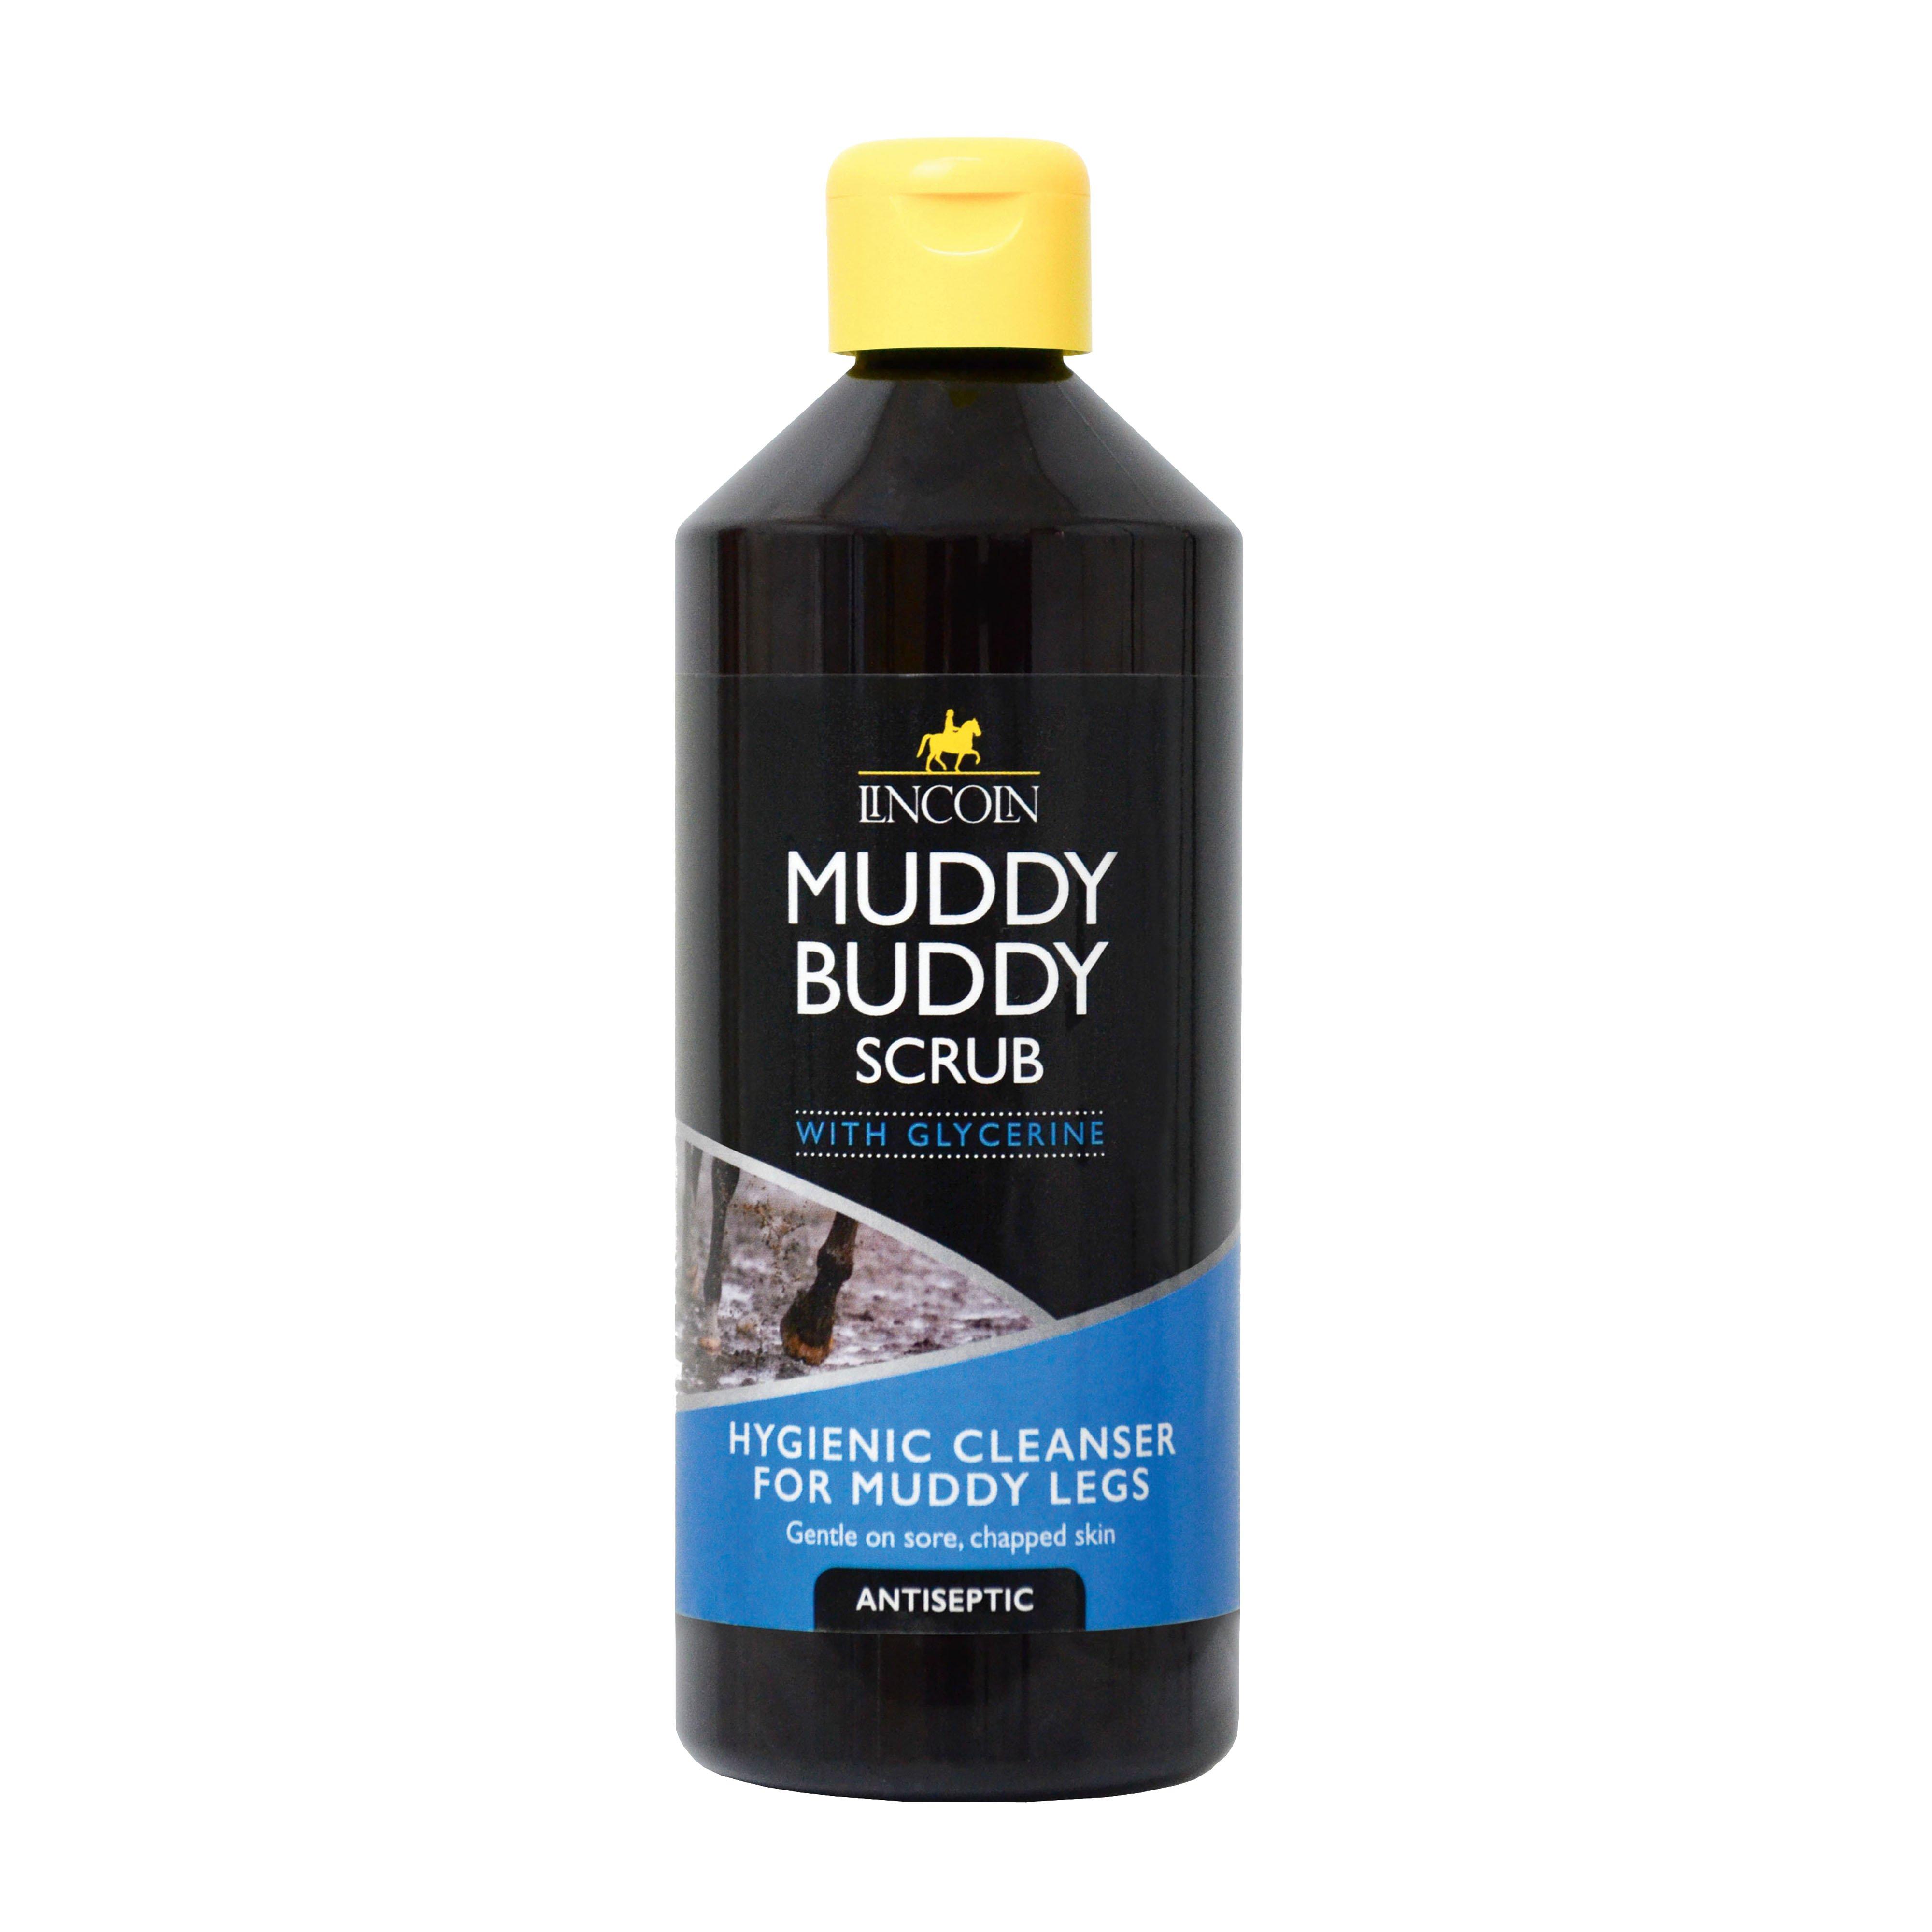 Muddy Buddy Scrub